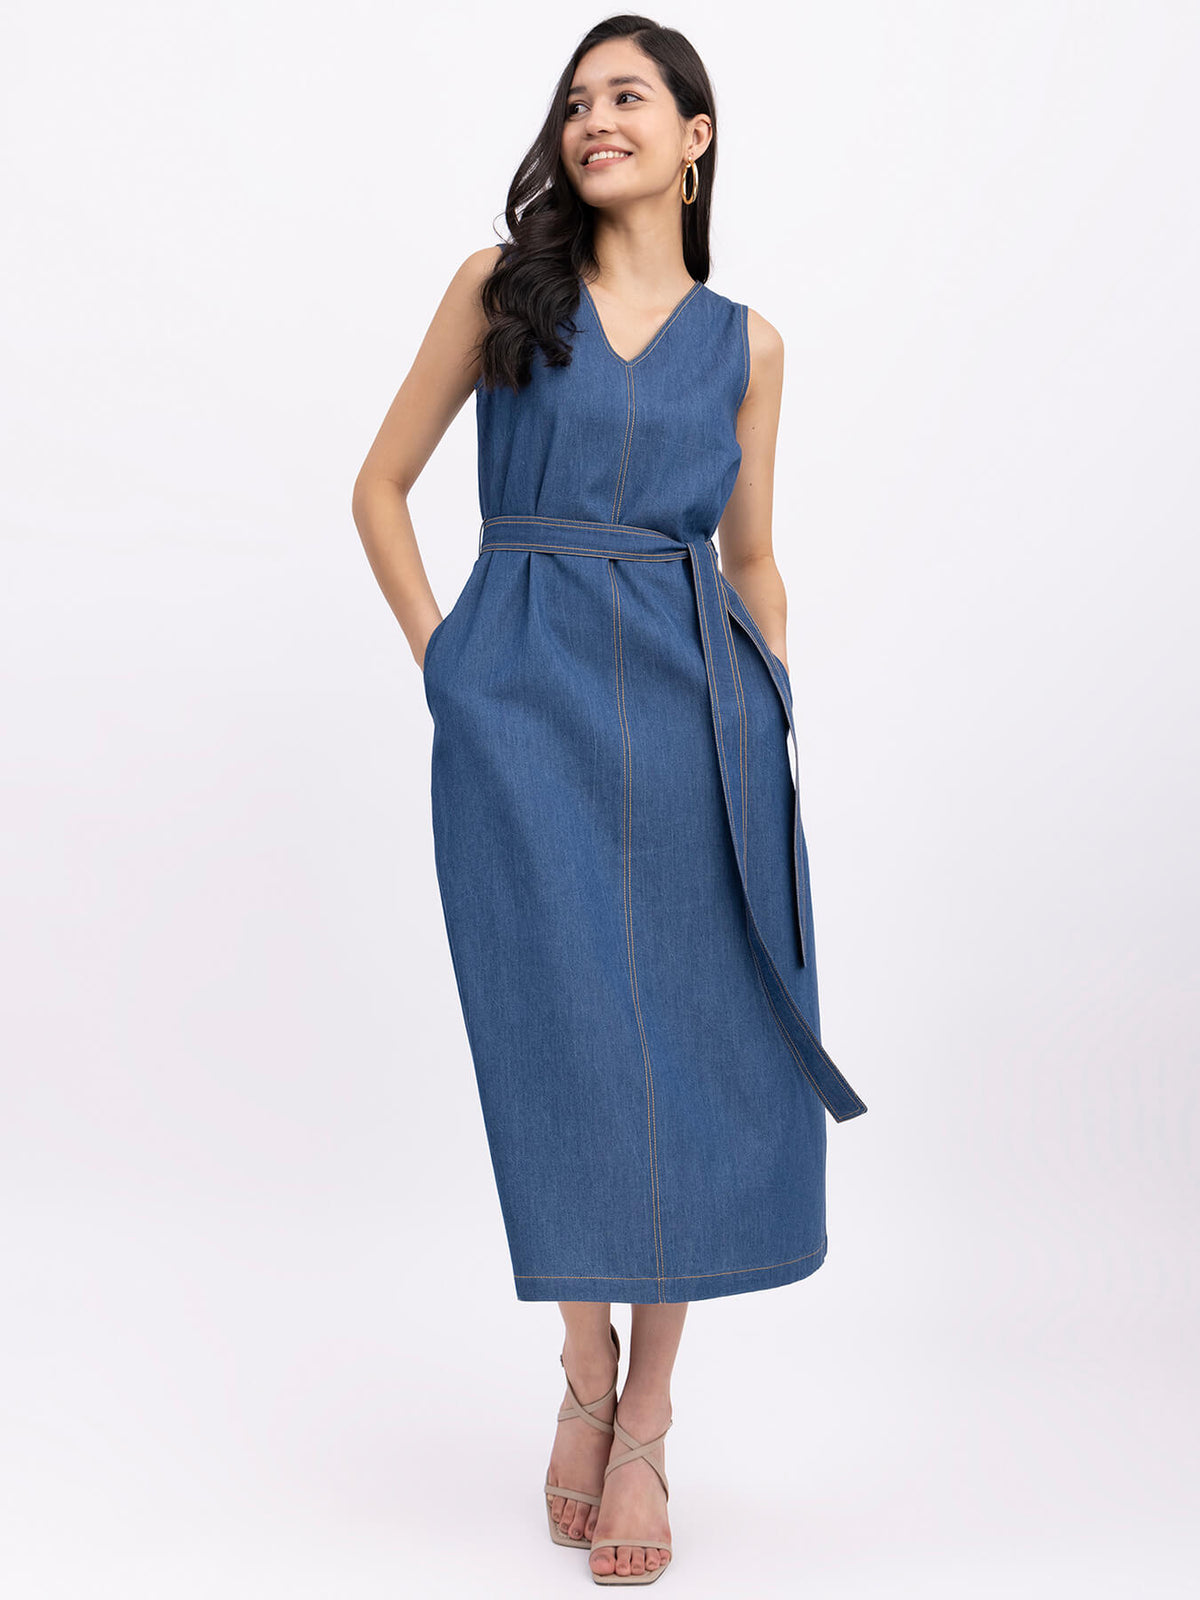 Denim V-Neck Sleeveless Dress - Navy Blue